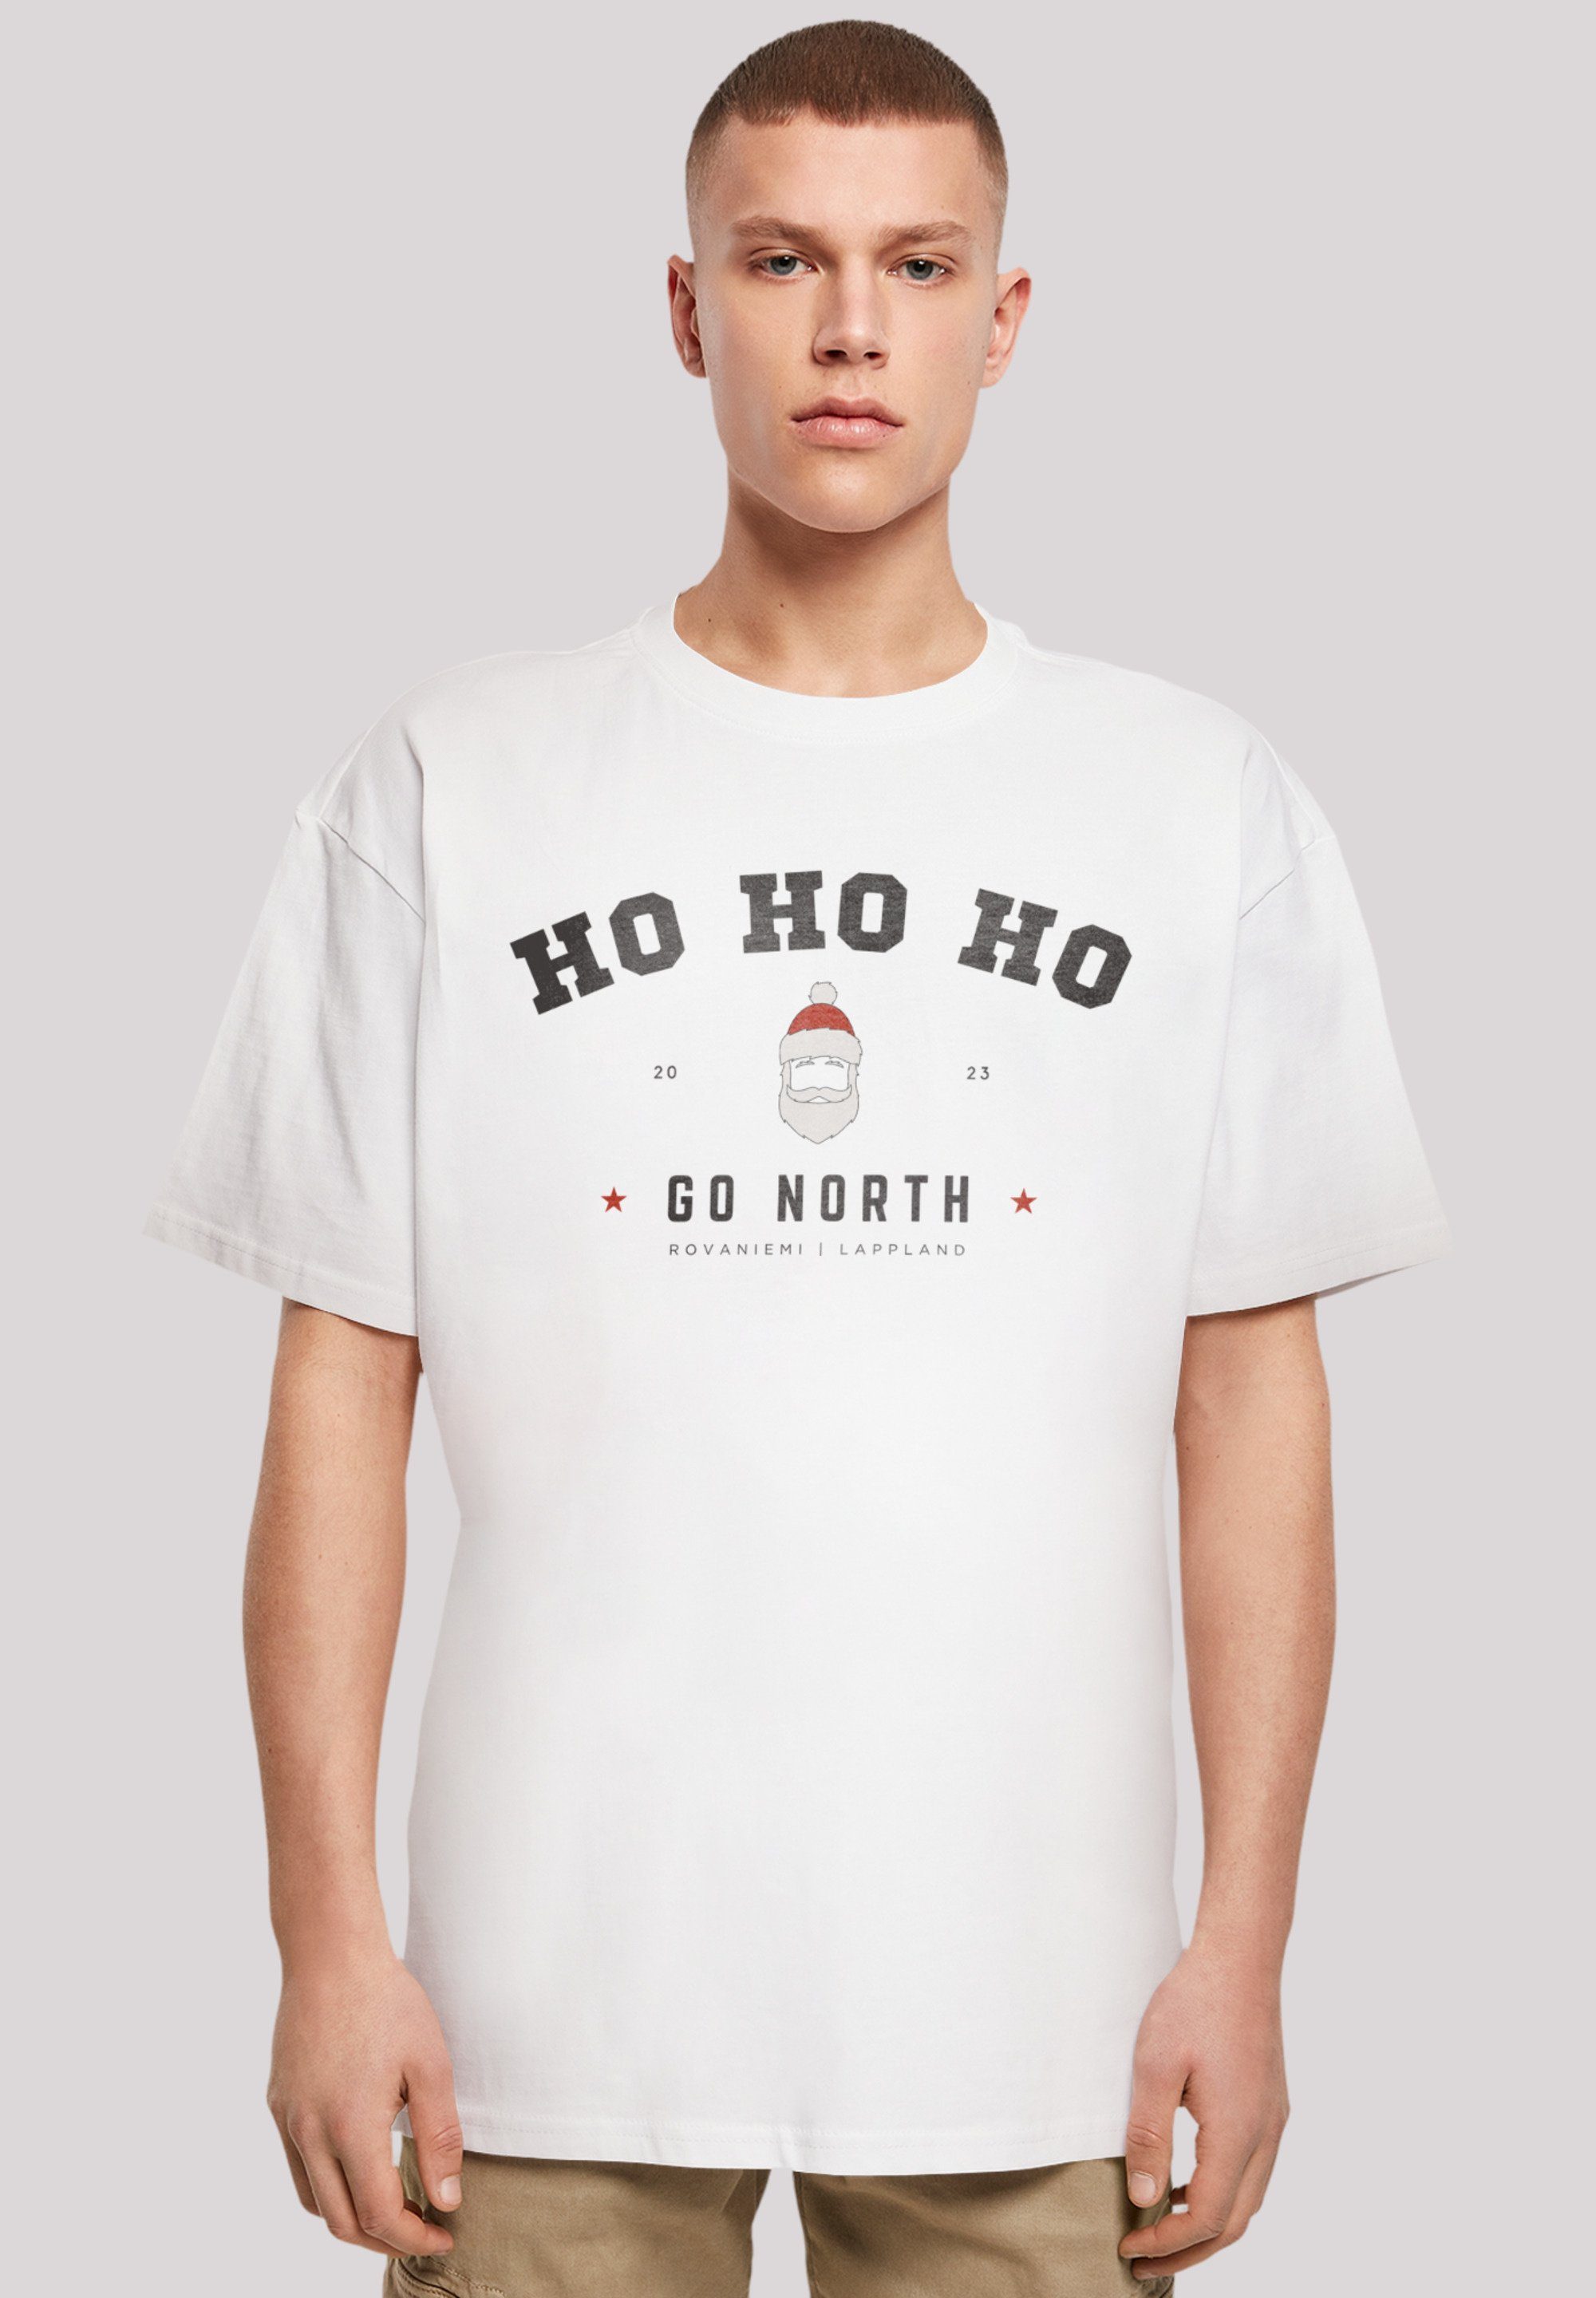 T-Shirt Weihnachten Ho Weihnachten, Geschenk, Ho Logo F4NT4STIC Claus Santa weiß Ho